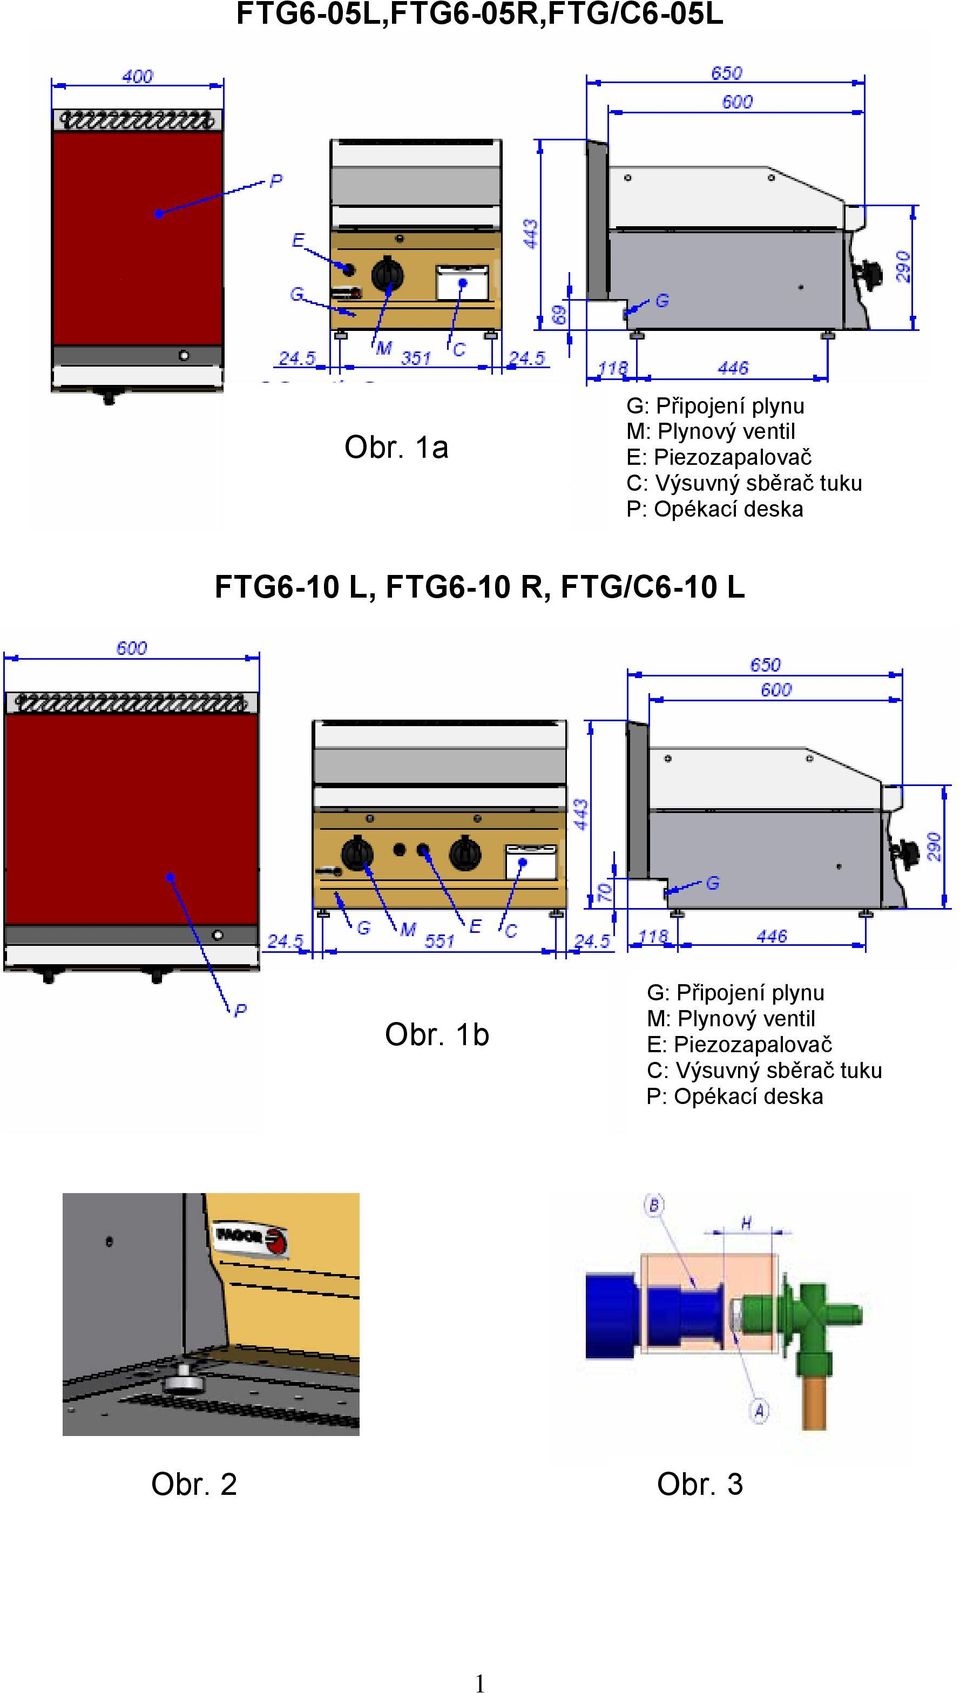 sběrač tuku P: Opékací deska FTG6-10 L, FTG6-10 R, FTG/C6-10 L Obr.